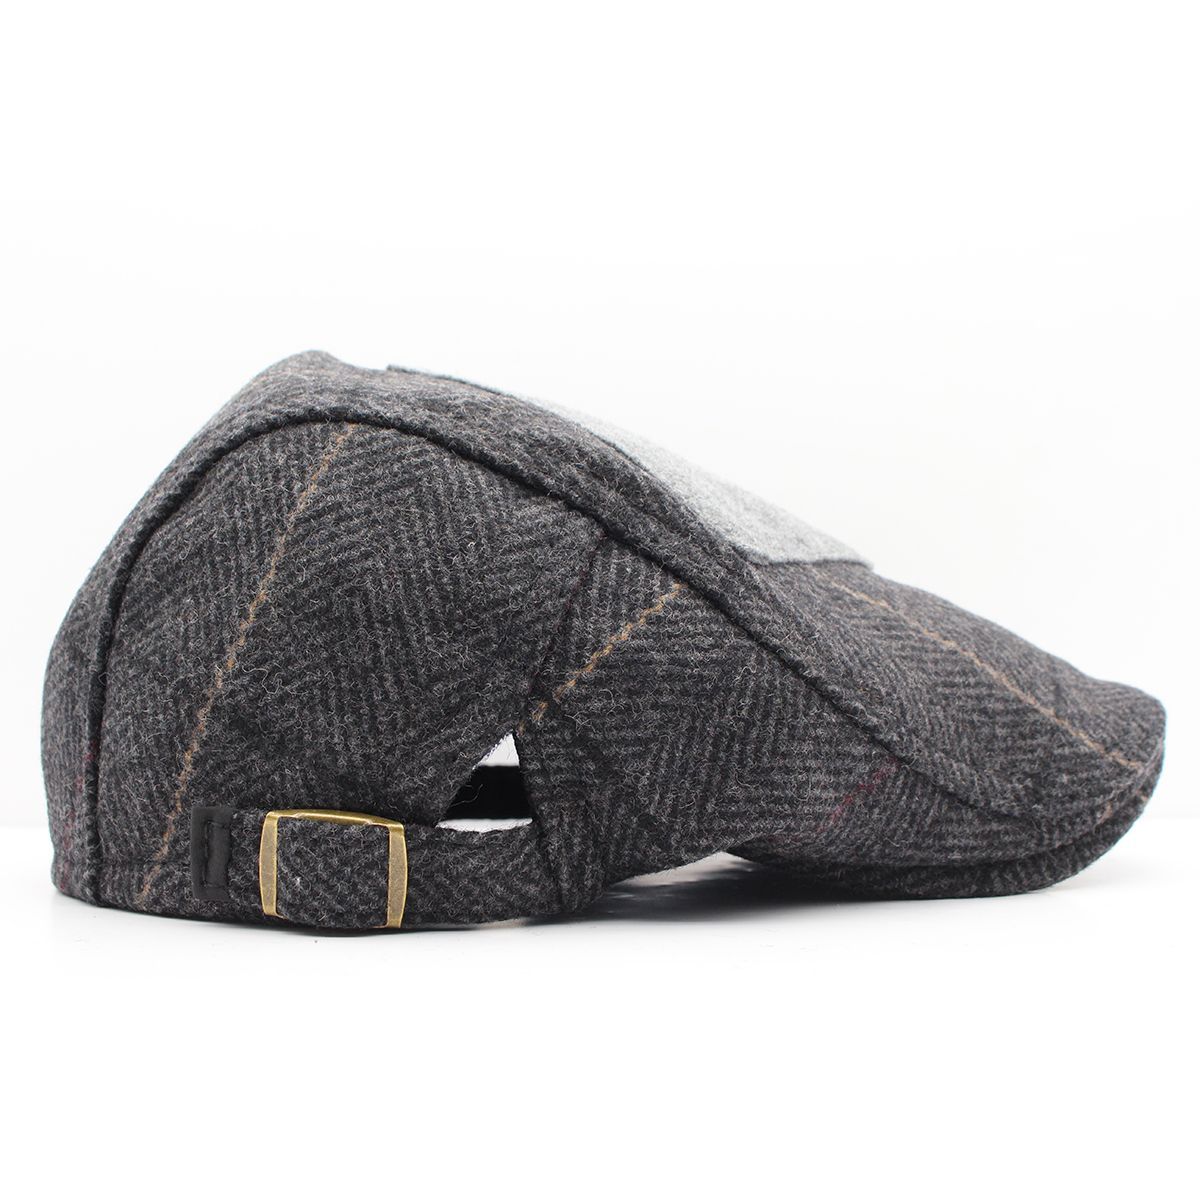 ハンチング帽子 杢柄 ヘリボーン ウール混 パッチワーク 帽子・キャップ 56cm~58cm HC128-1